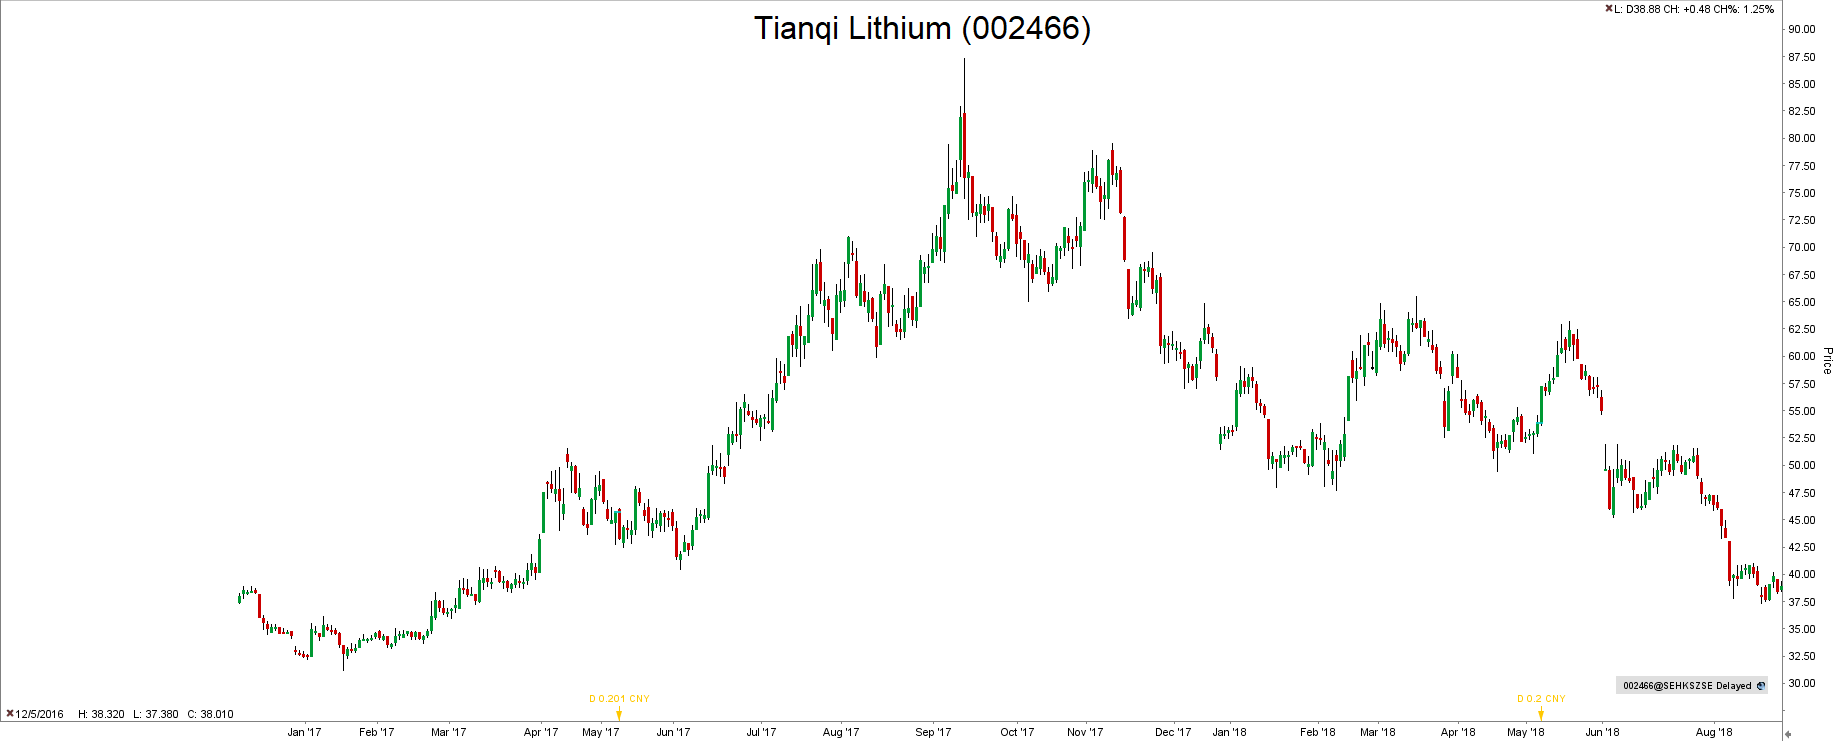 Inwestycje w lit Tianqi Lithium